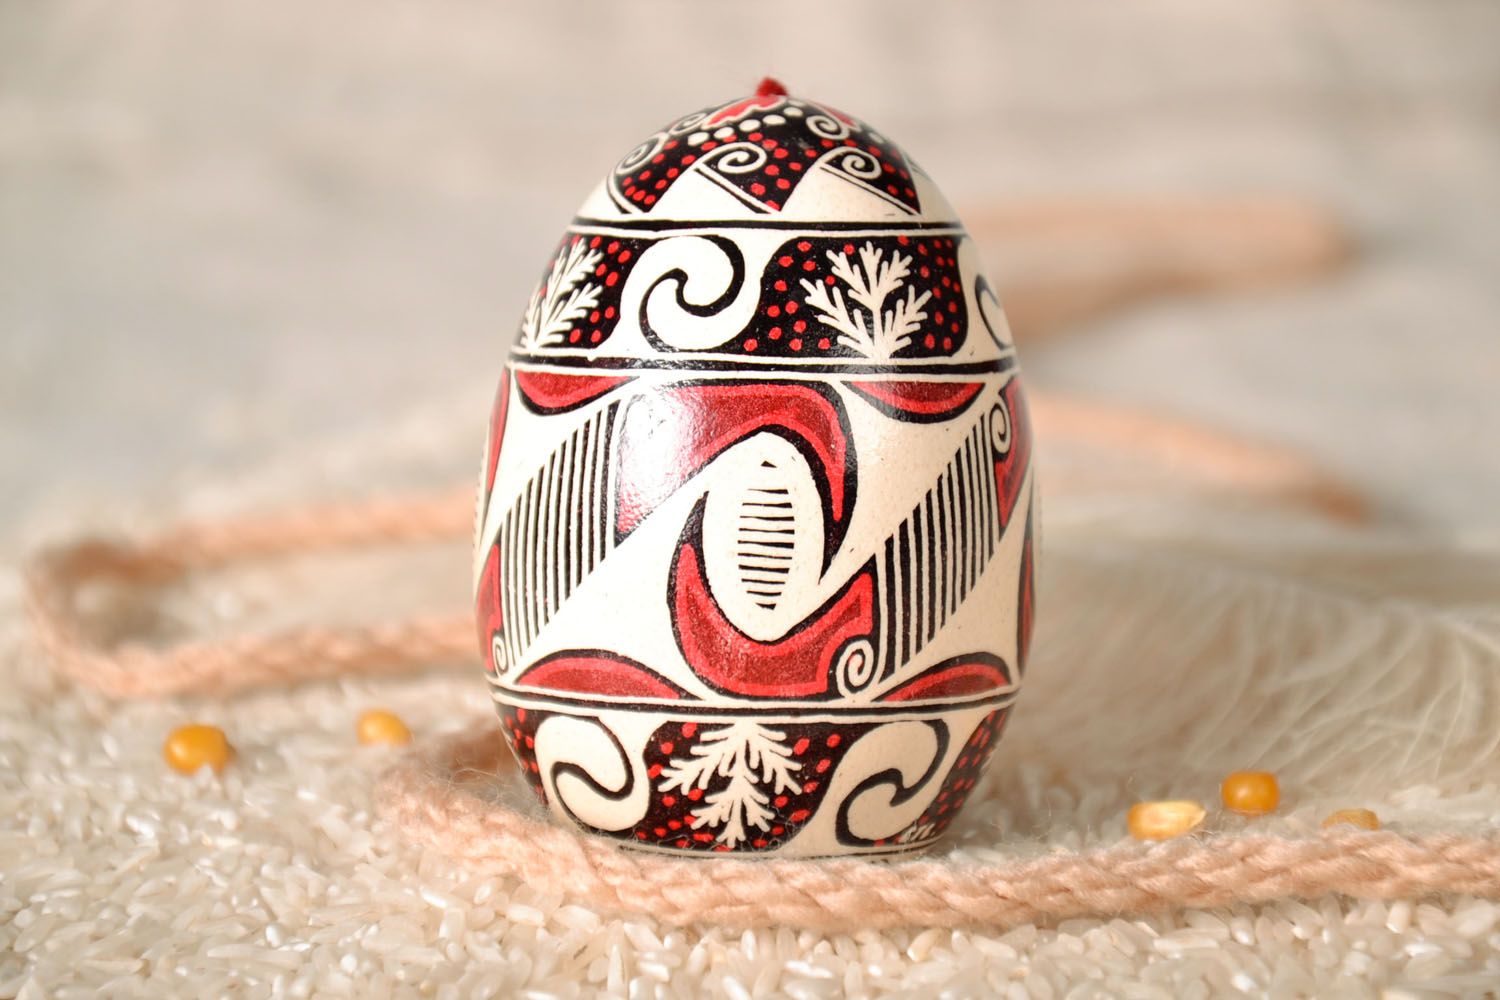 Oeuf de Pâques décoratif fait main original à suspendre avec bel ornement photo 1